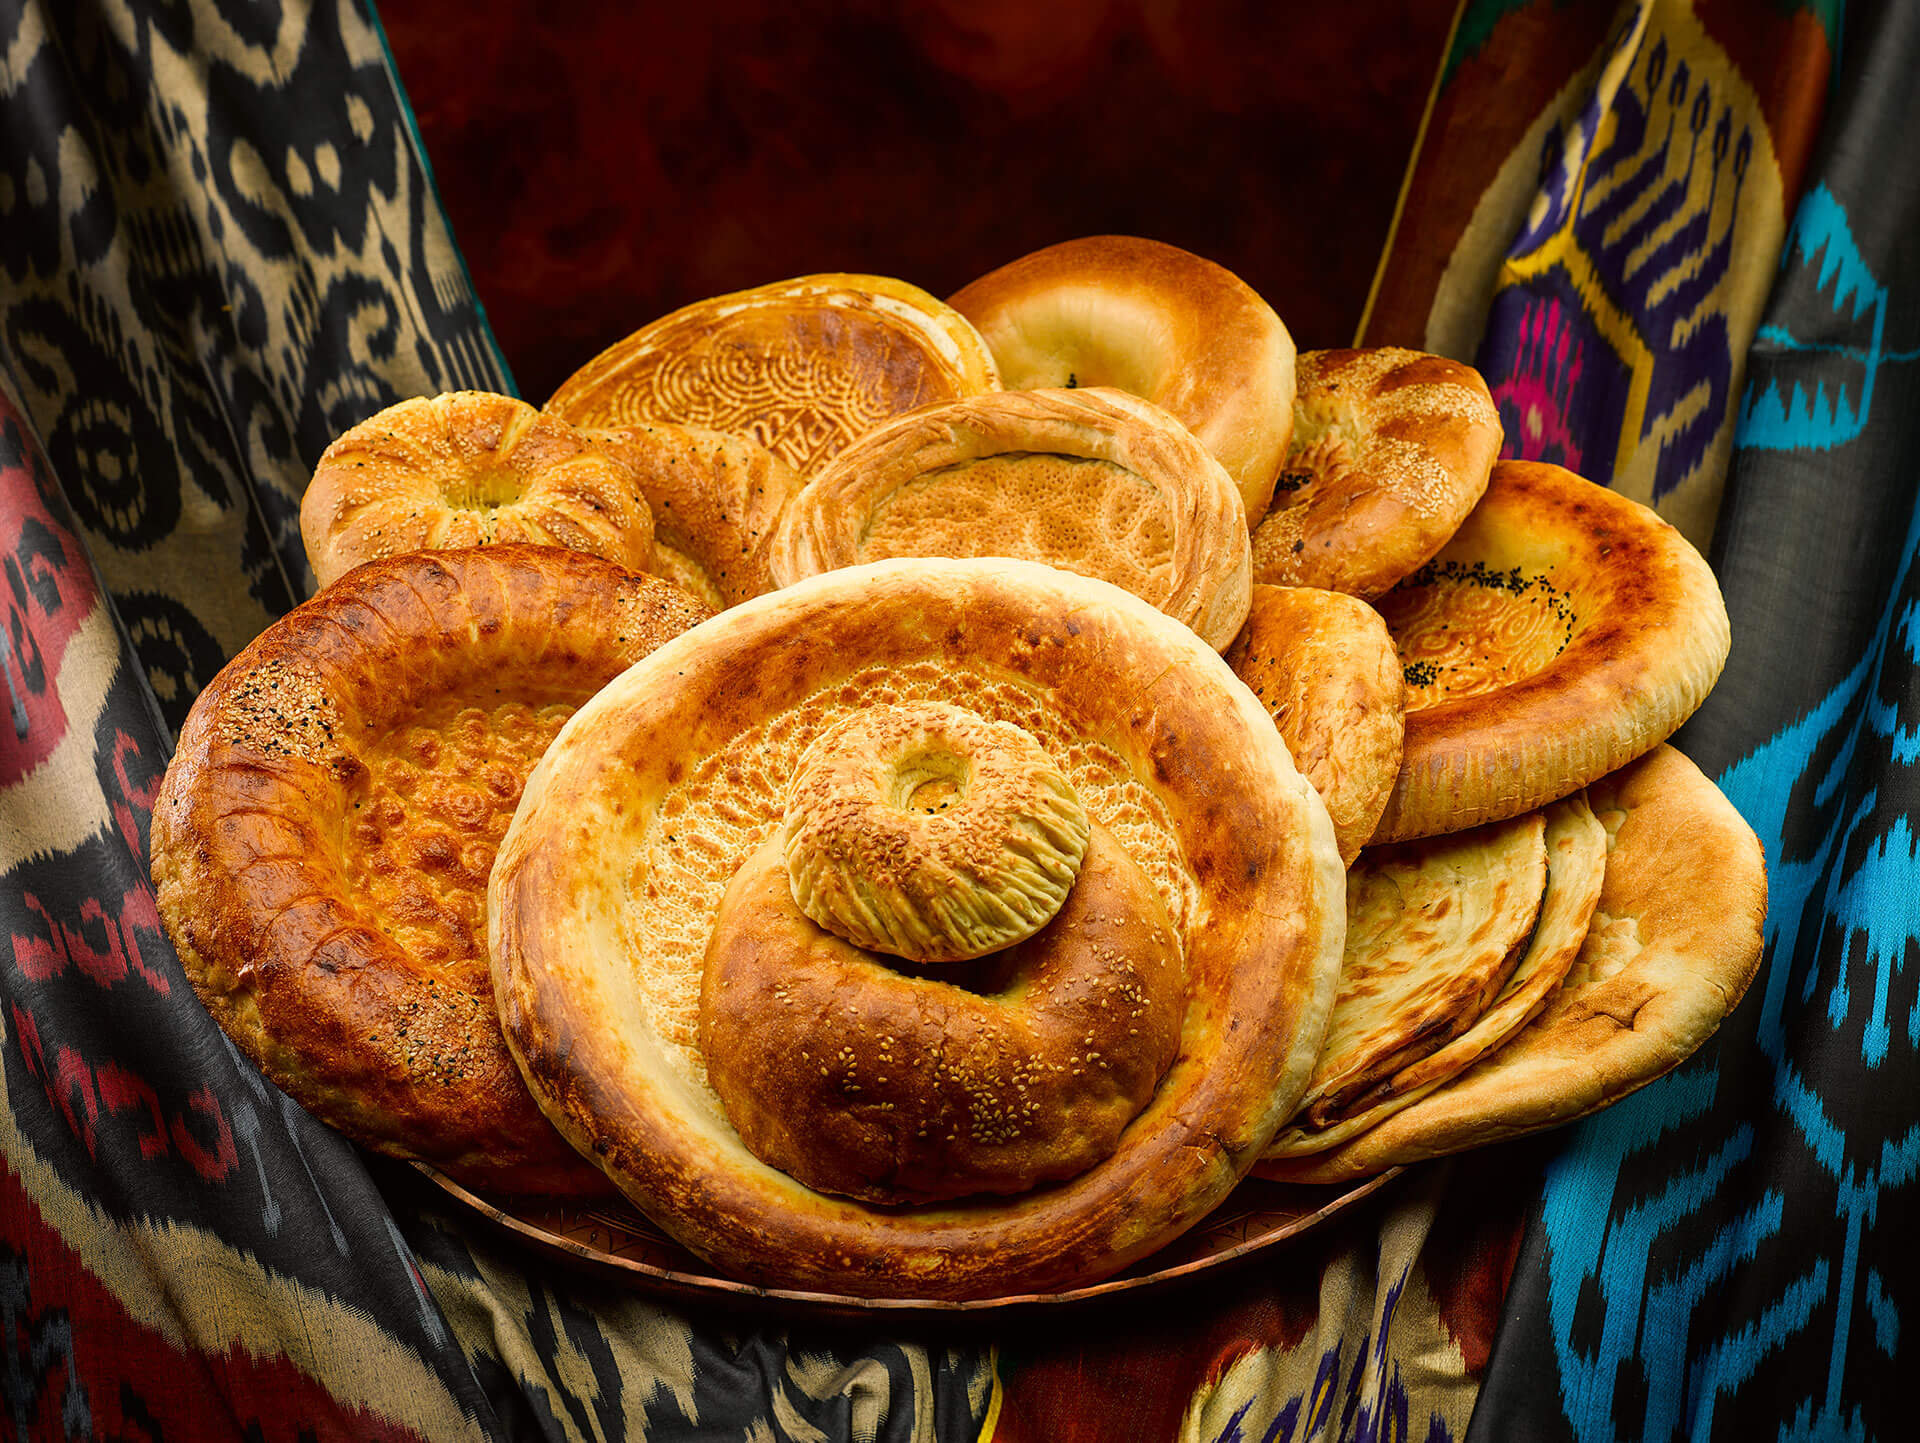 Đối với người dân Uzber, bánh mỳ chứa đựng rất nhiều ý nghĩa